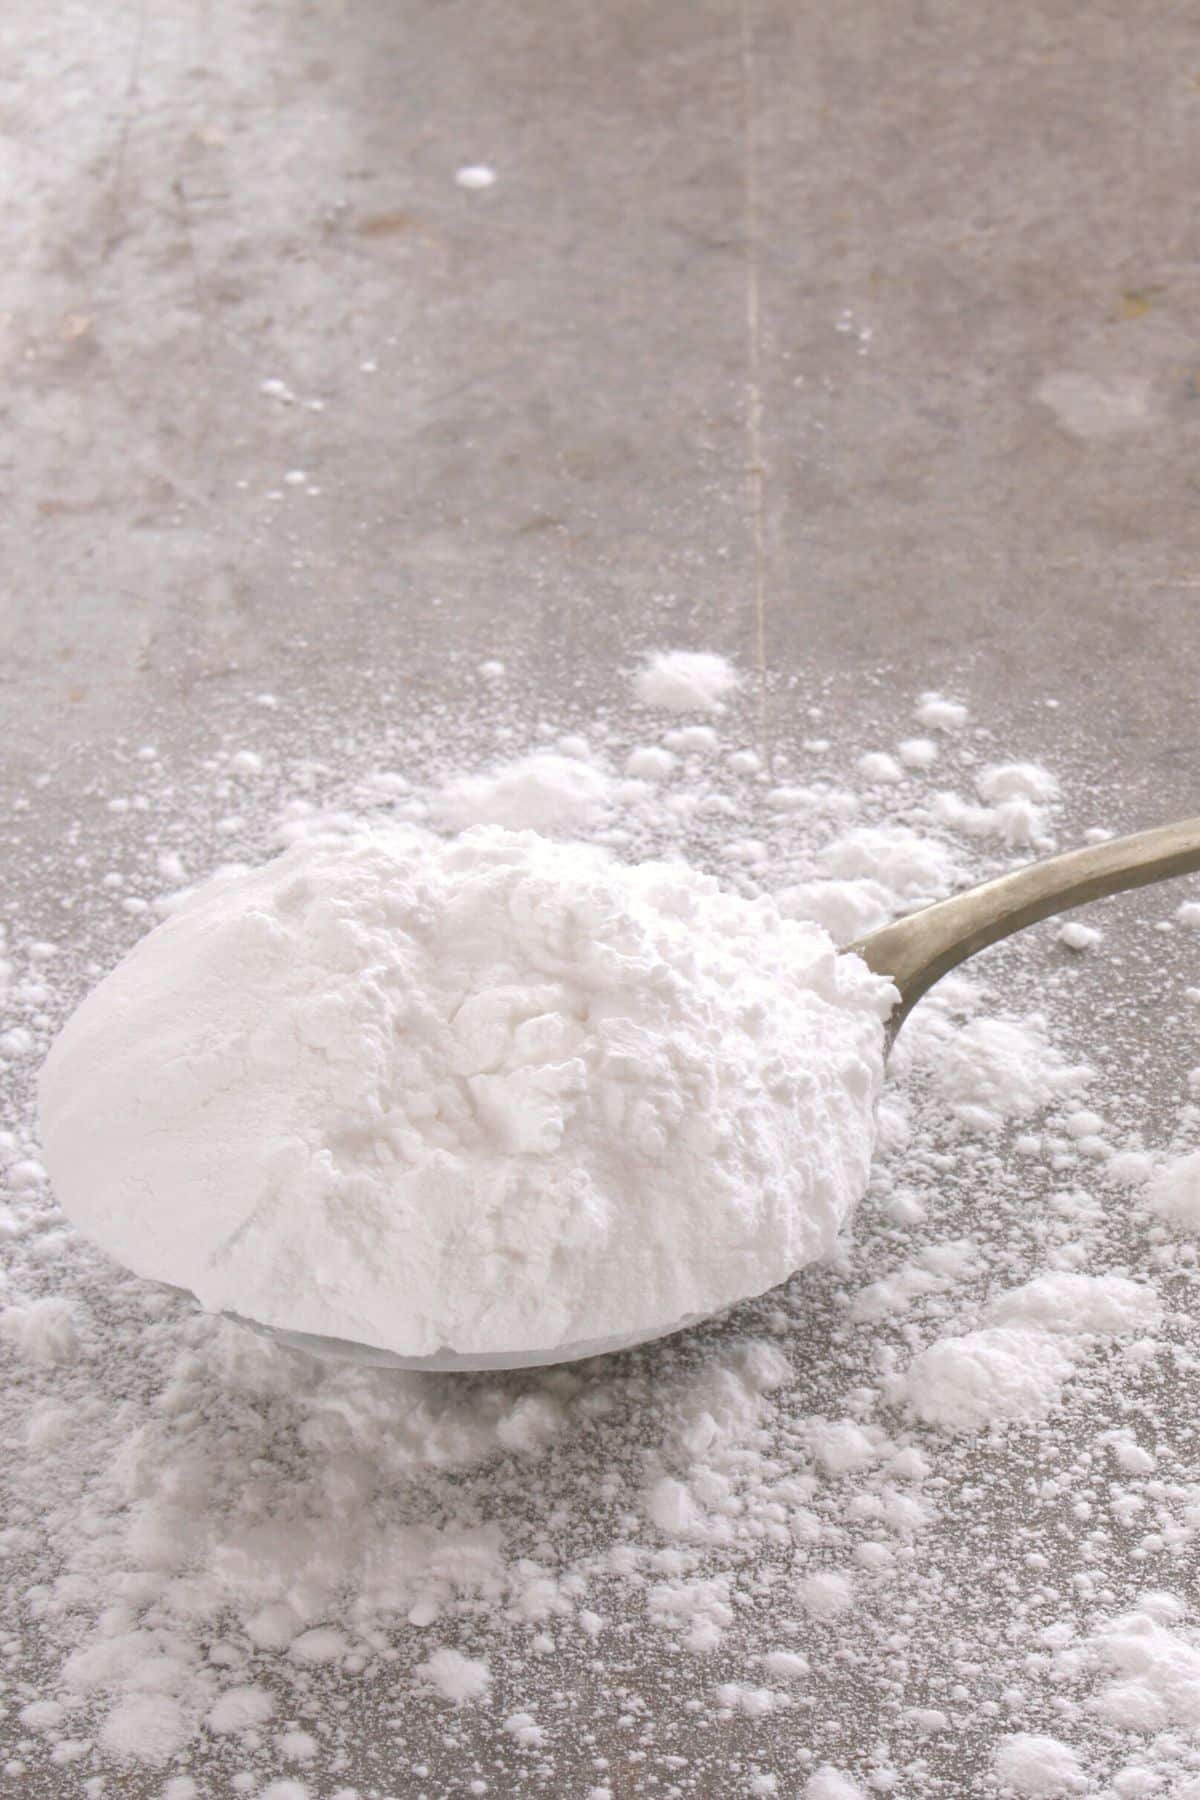 A big silver spoon full of powdered sugar.